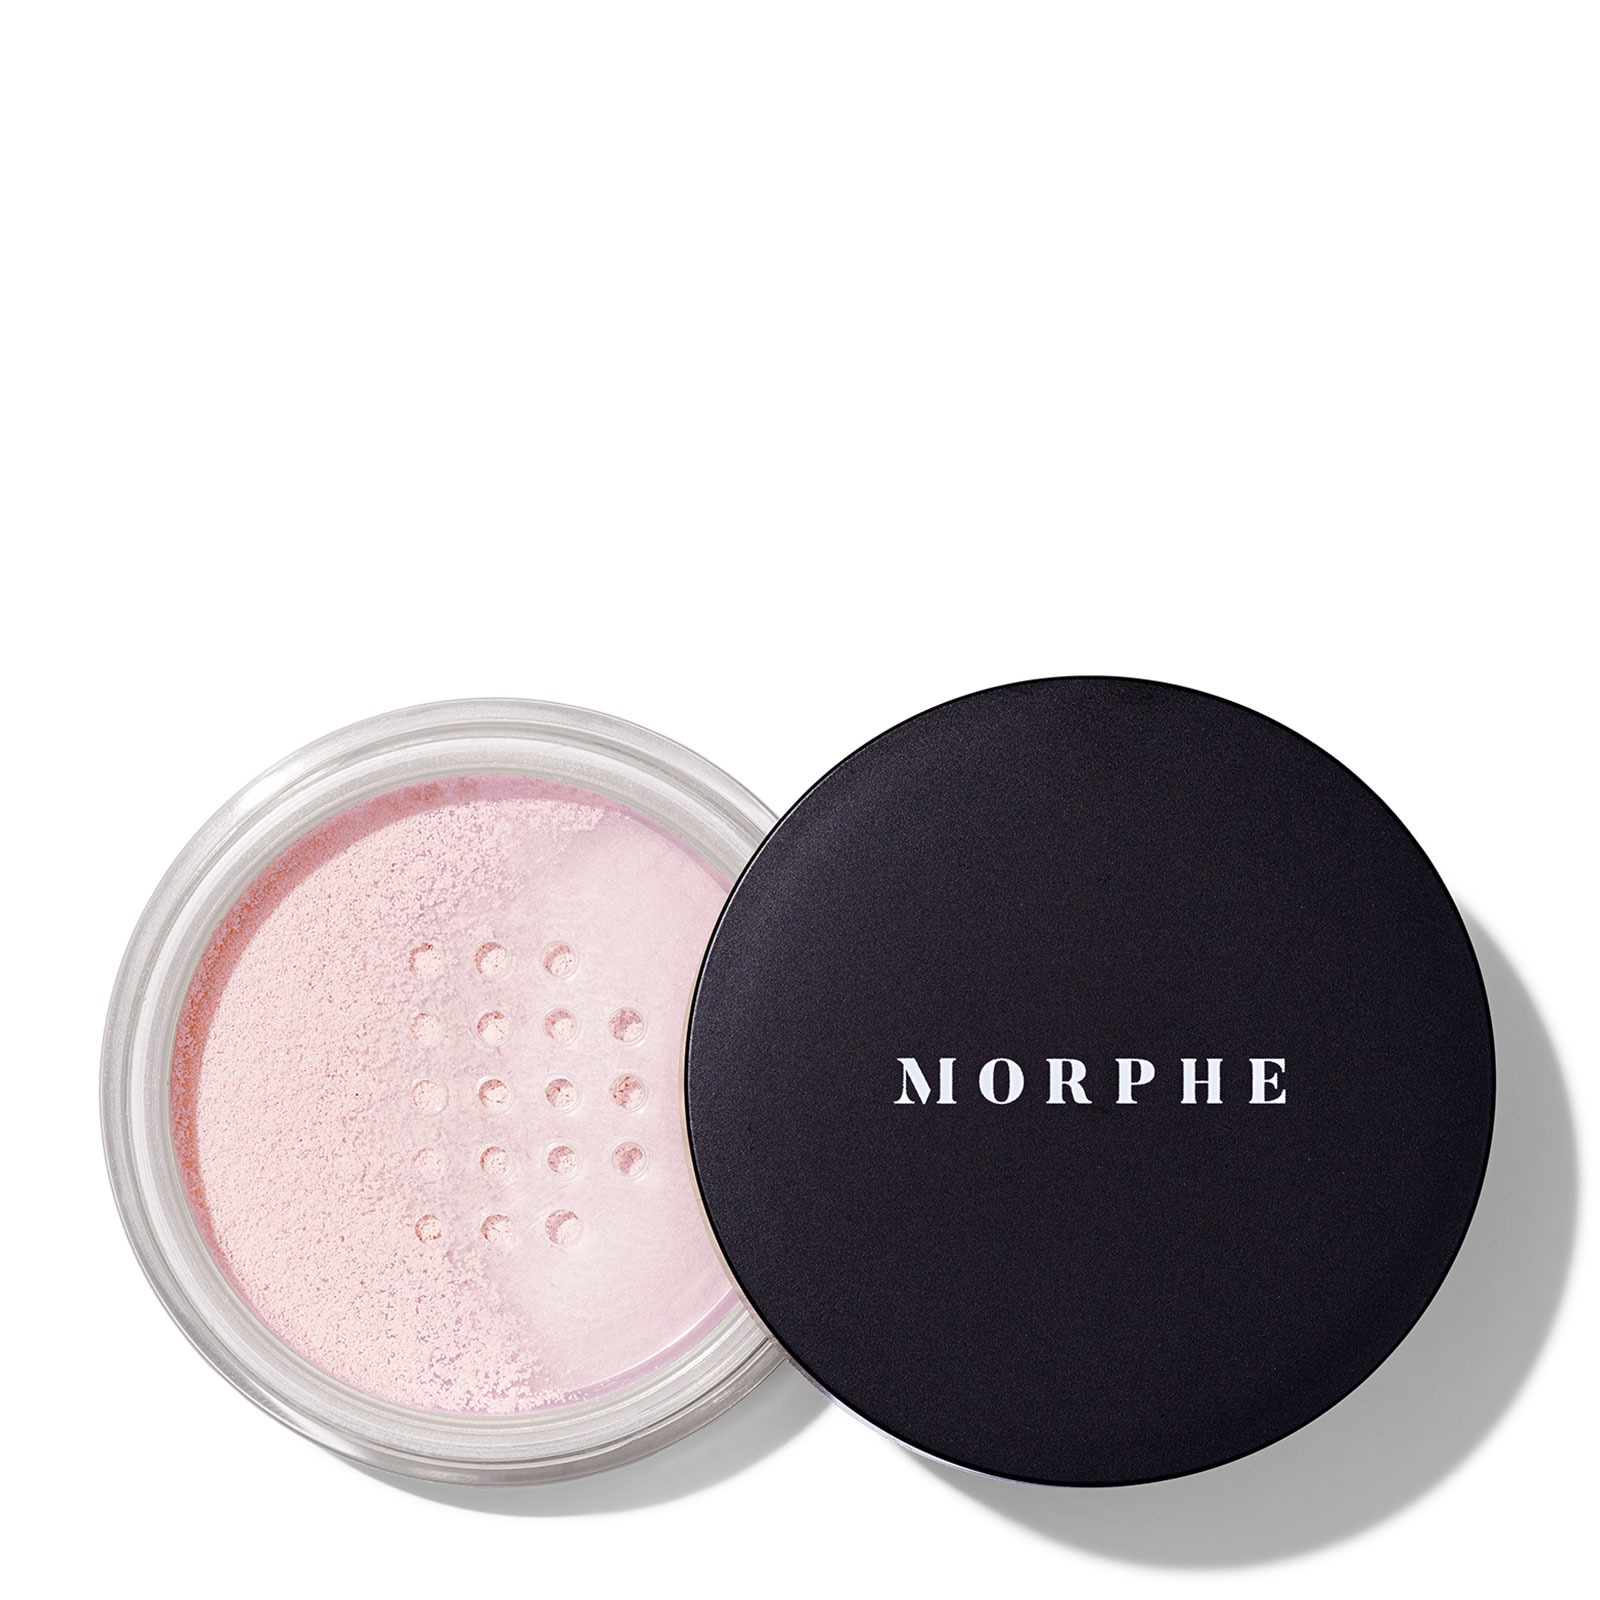 Morphe Bake & Set Setting Powder 9G Brightening Pink